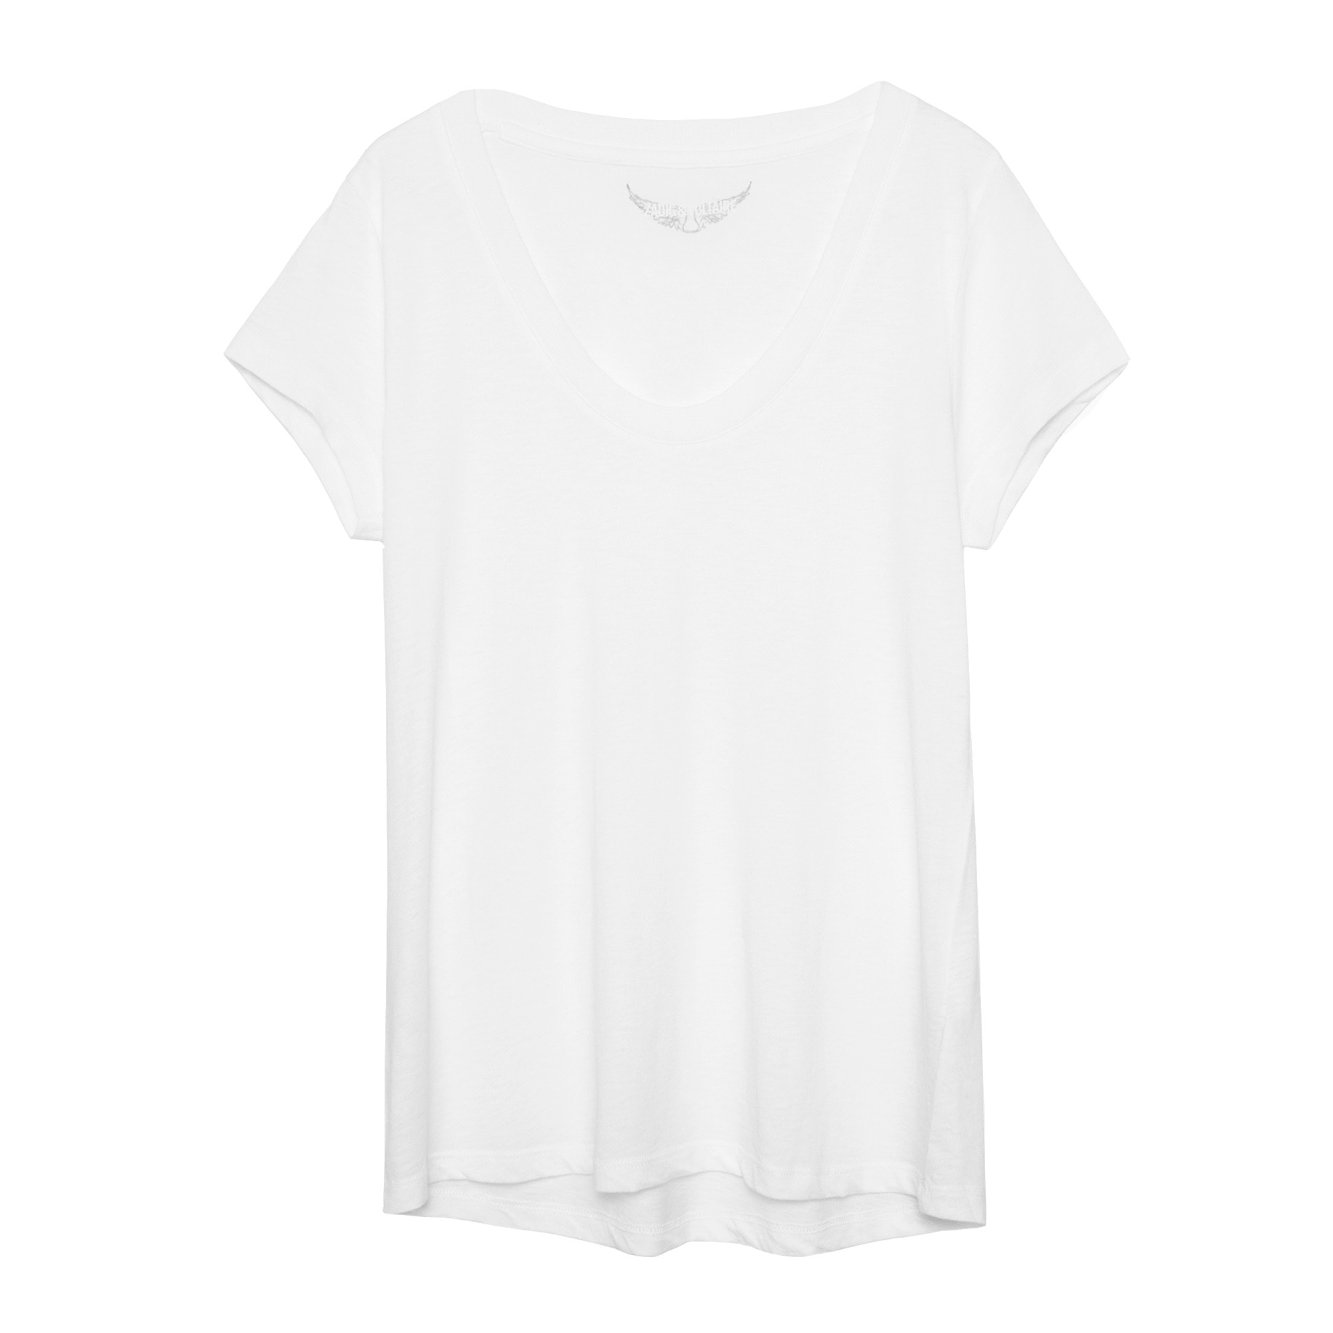 T-shirt blanc femme en coton et modal.